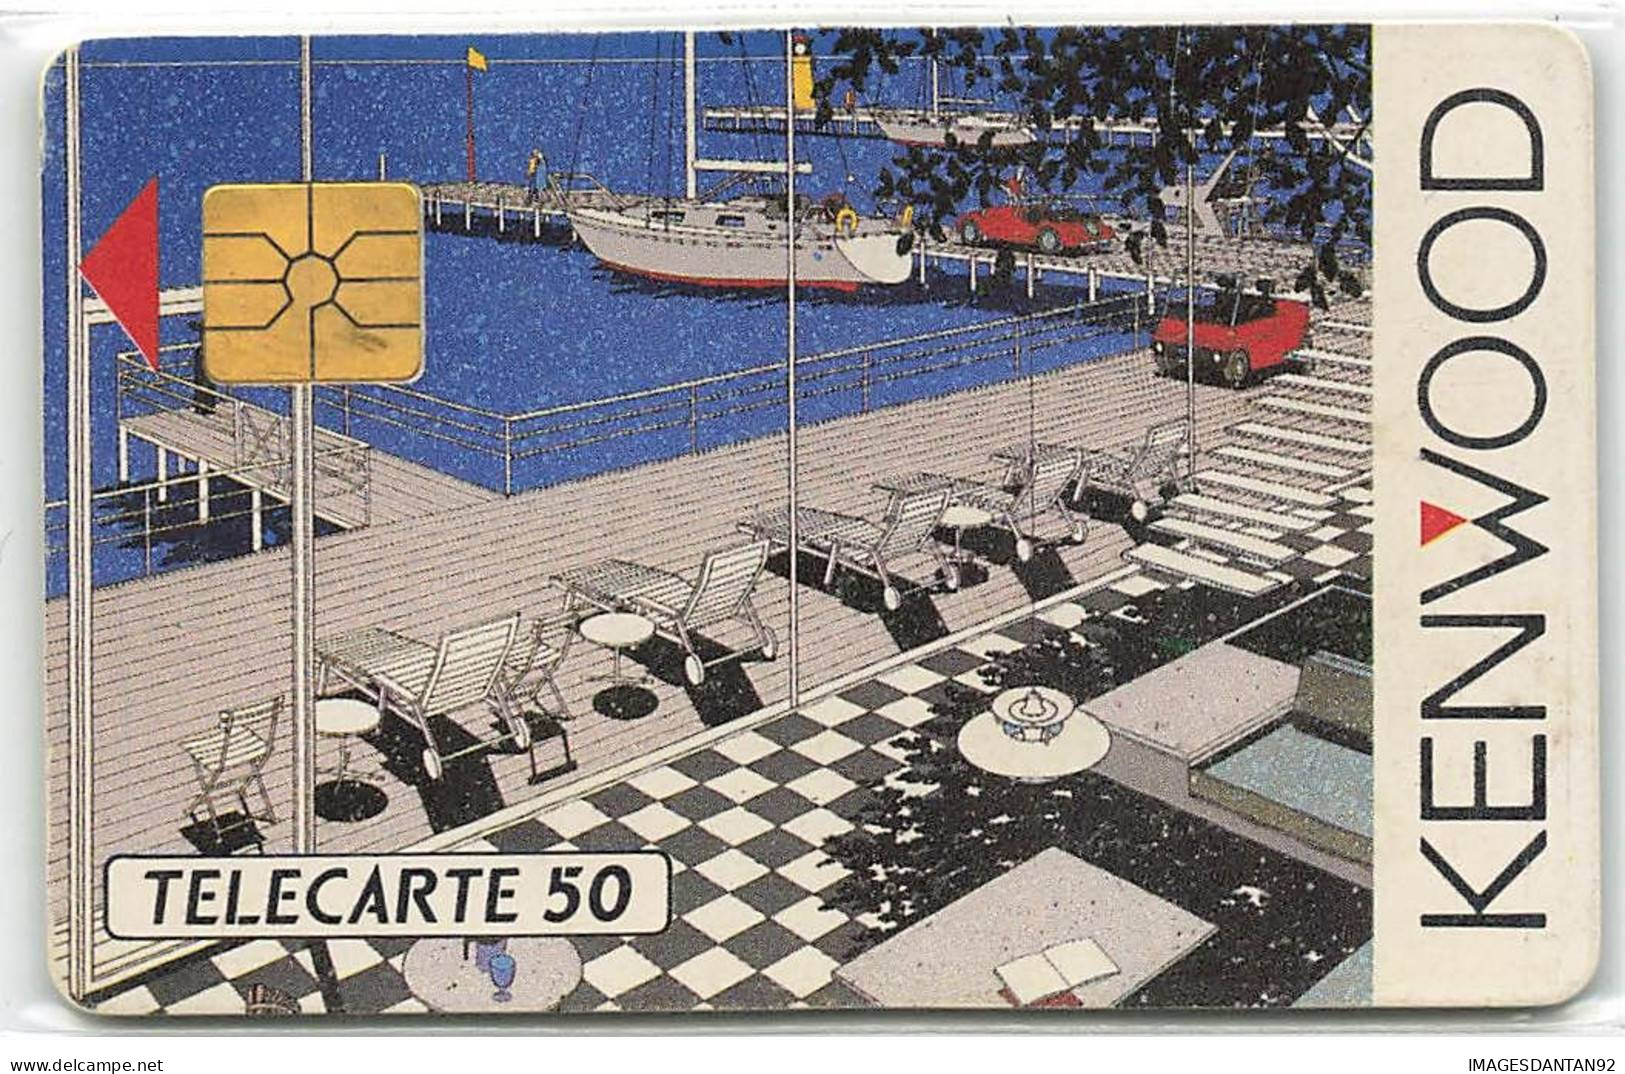 KENWOOD - 50U 5000 Ex ANNEE 1989 - Phonecards: Private Use